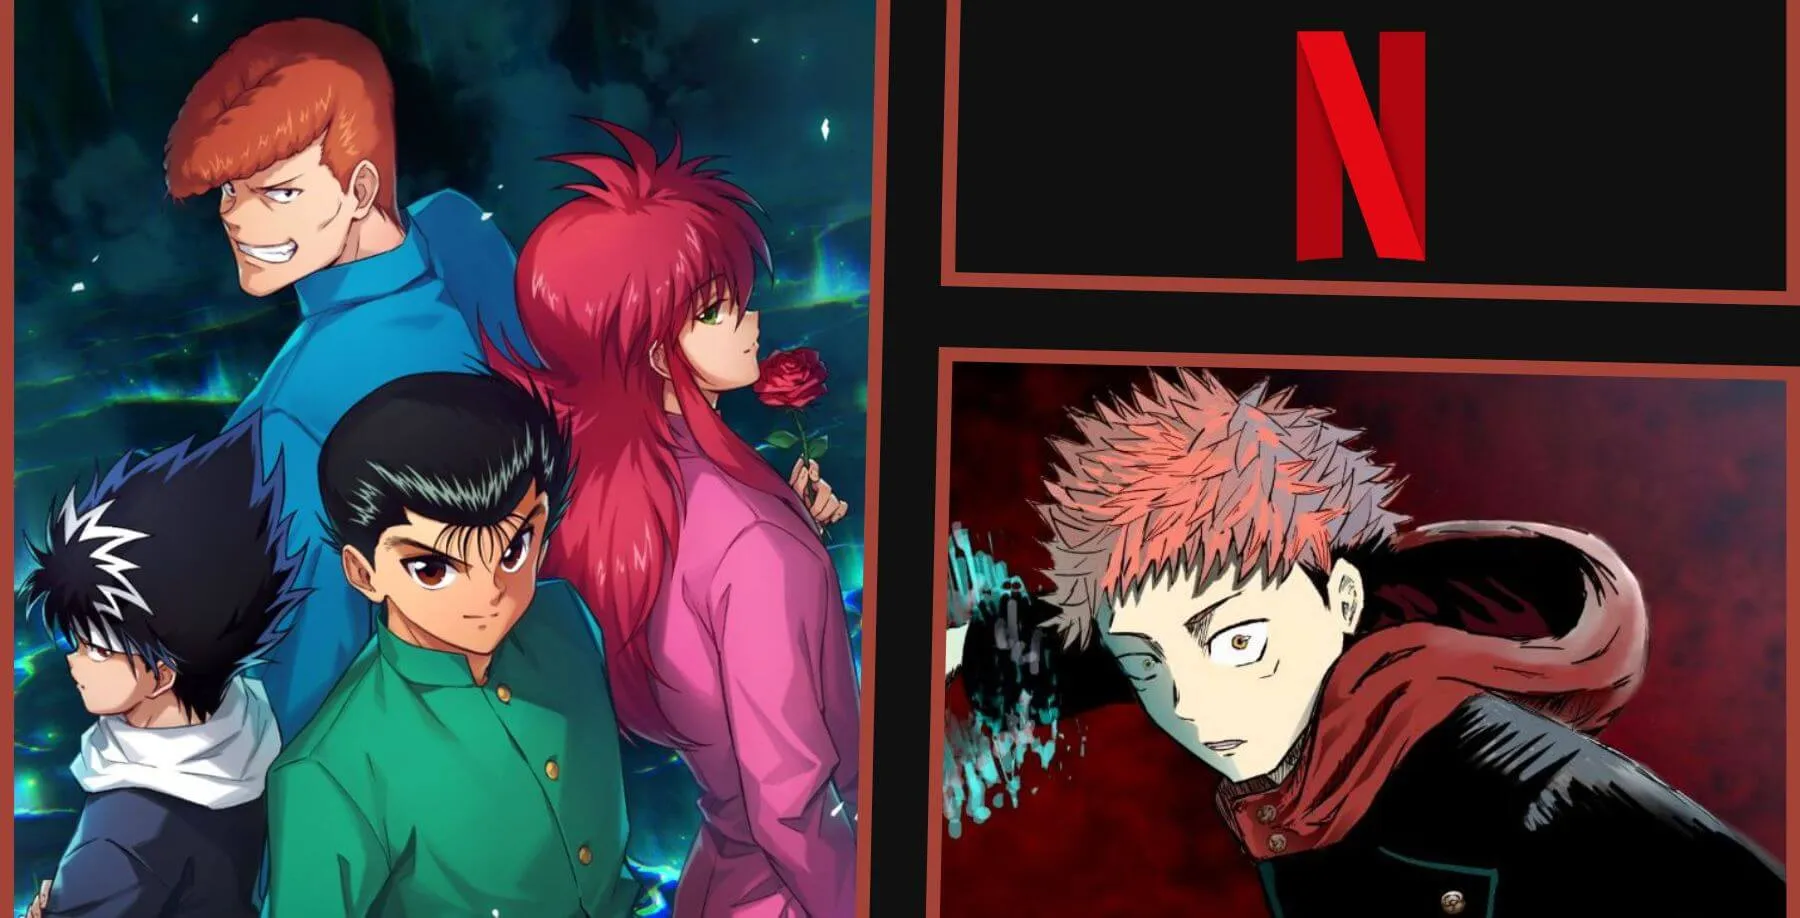 Imagens dos personagens de Yu Yu Hakusho, Jujutsu Kaisen e a logo da Netflix